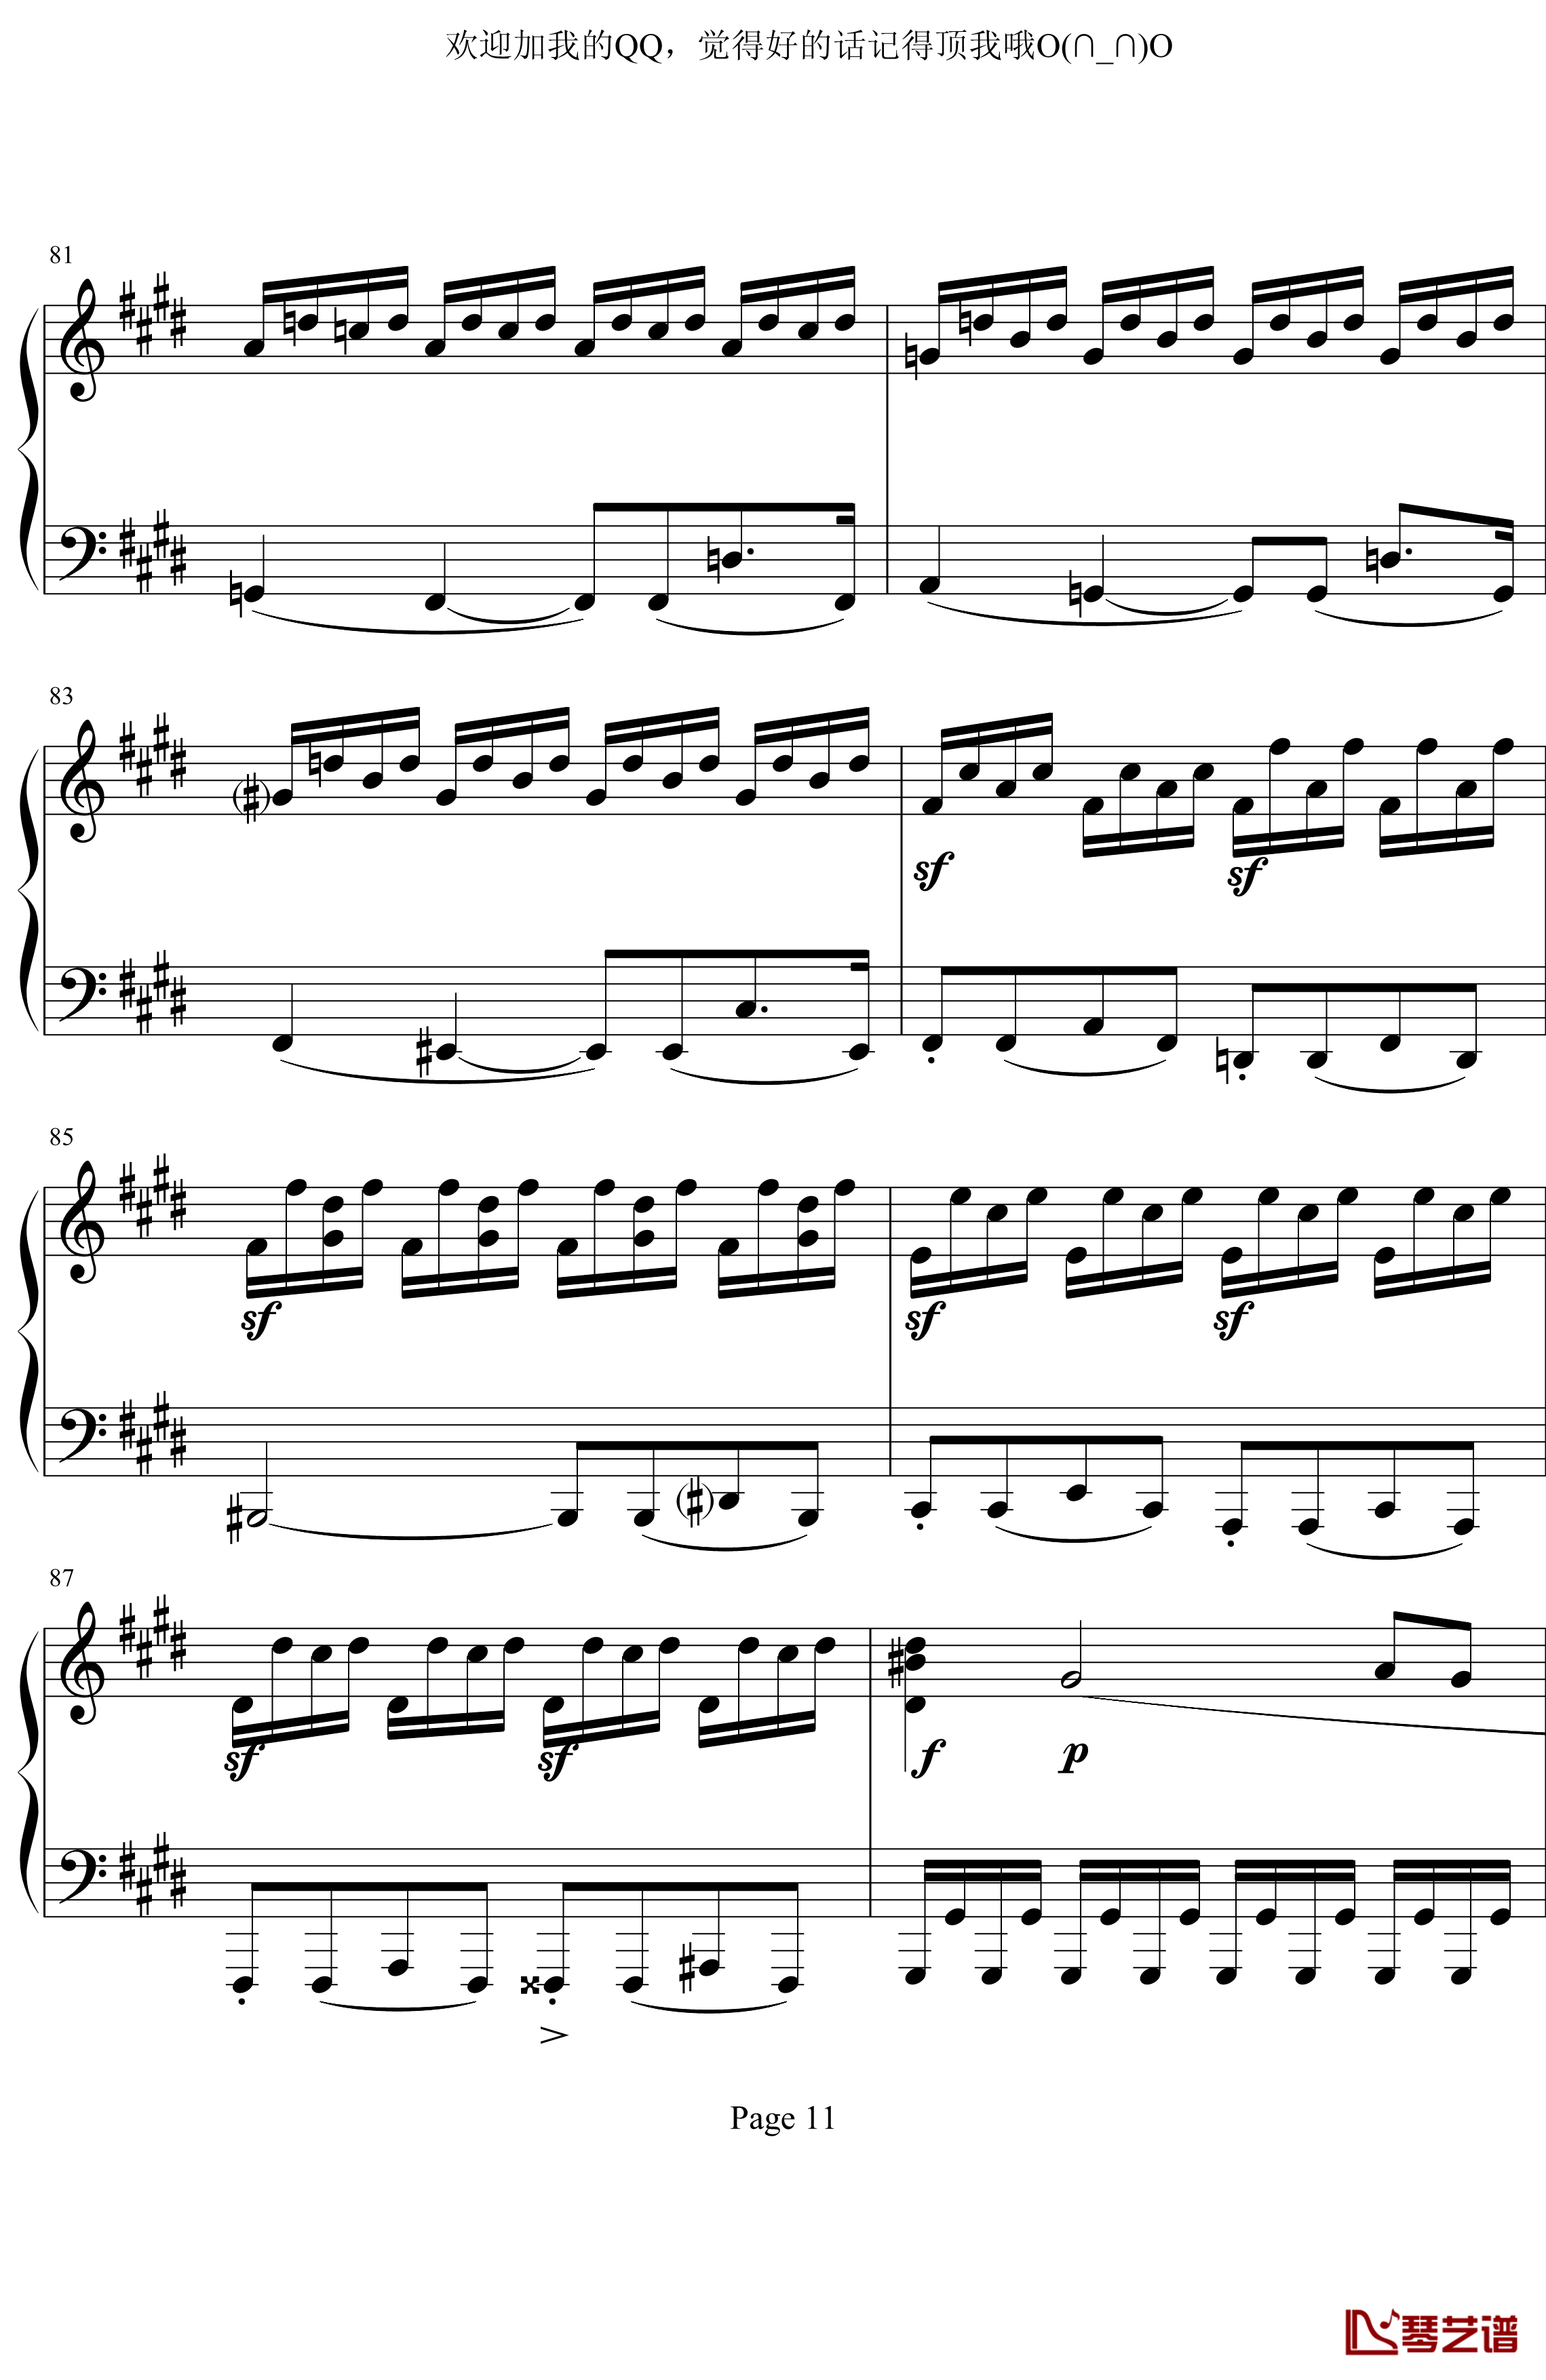 月光奏鸣曲第三乐章钢琴谱-贝多芬-beethoven11